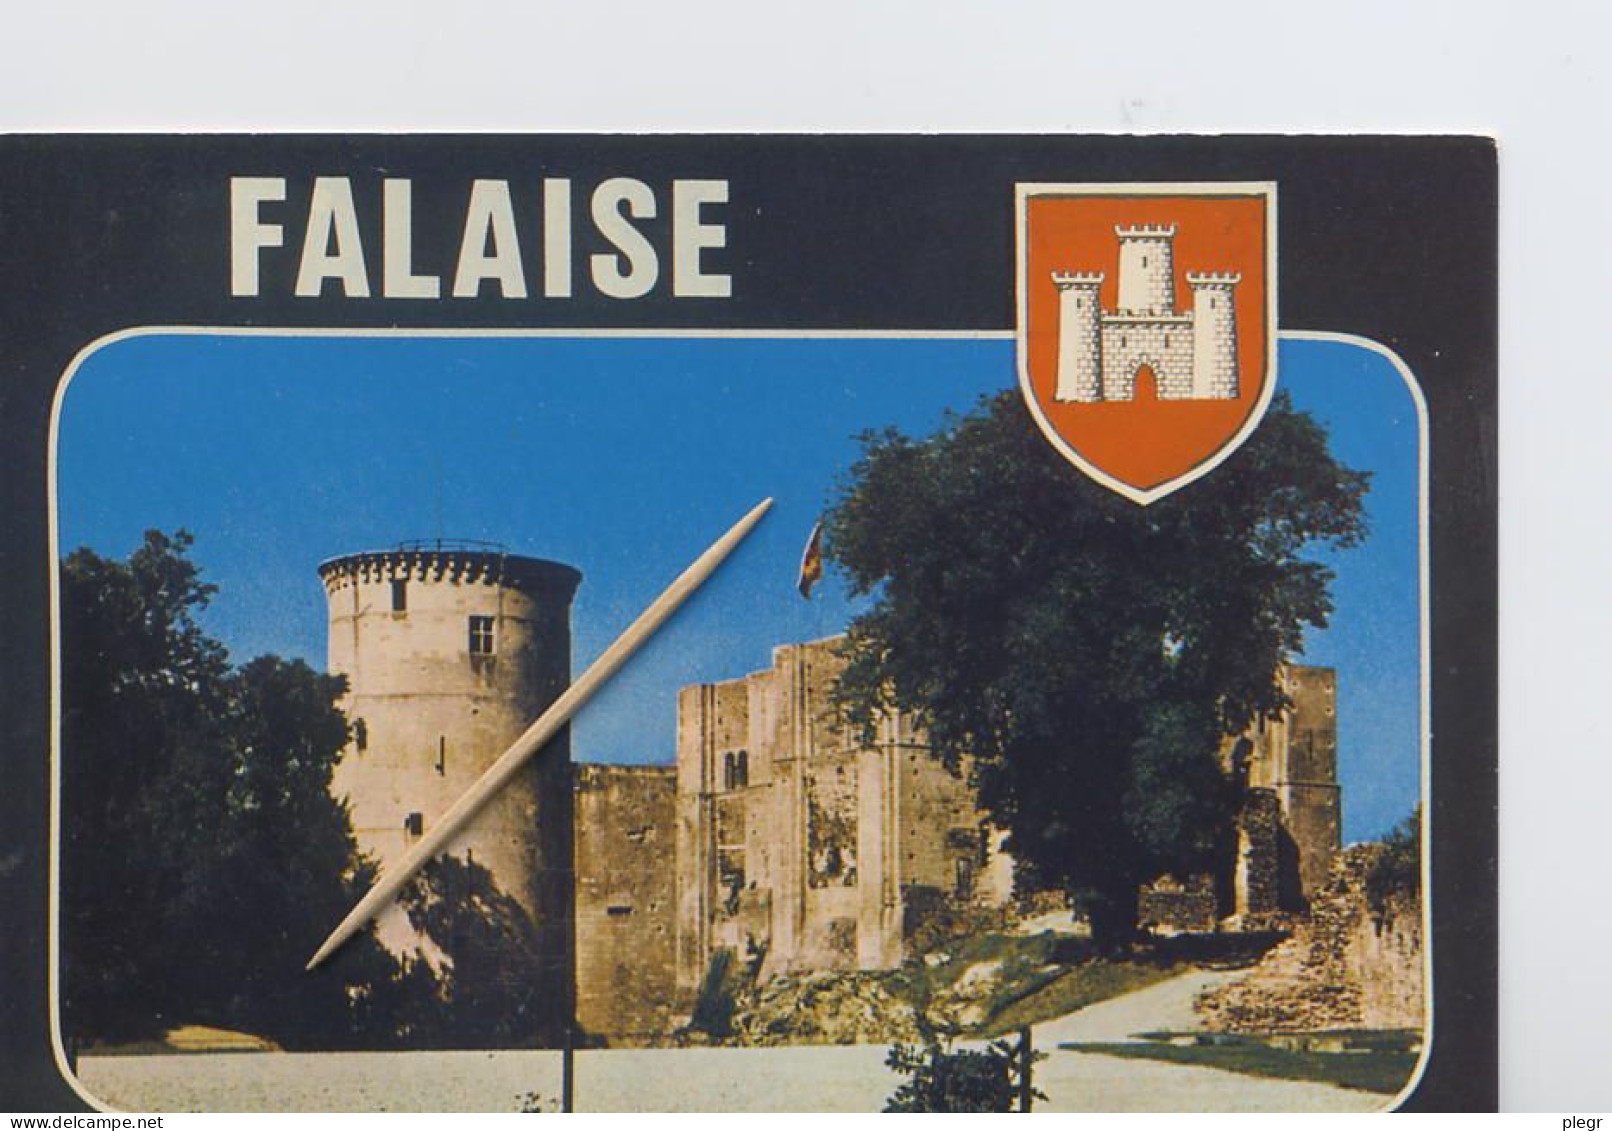 14258 02 01#0+14 - FALAISE - LE CHÂTEAU - Falaise